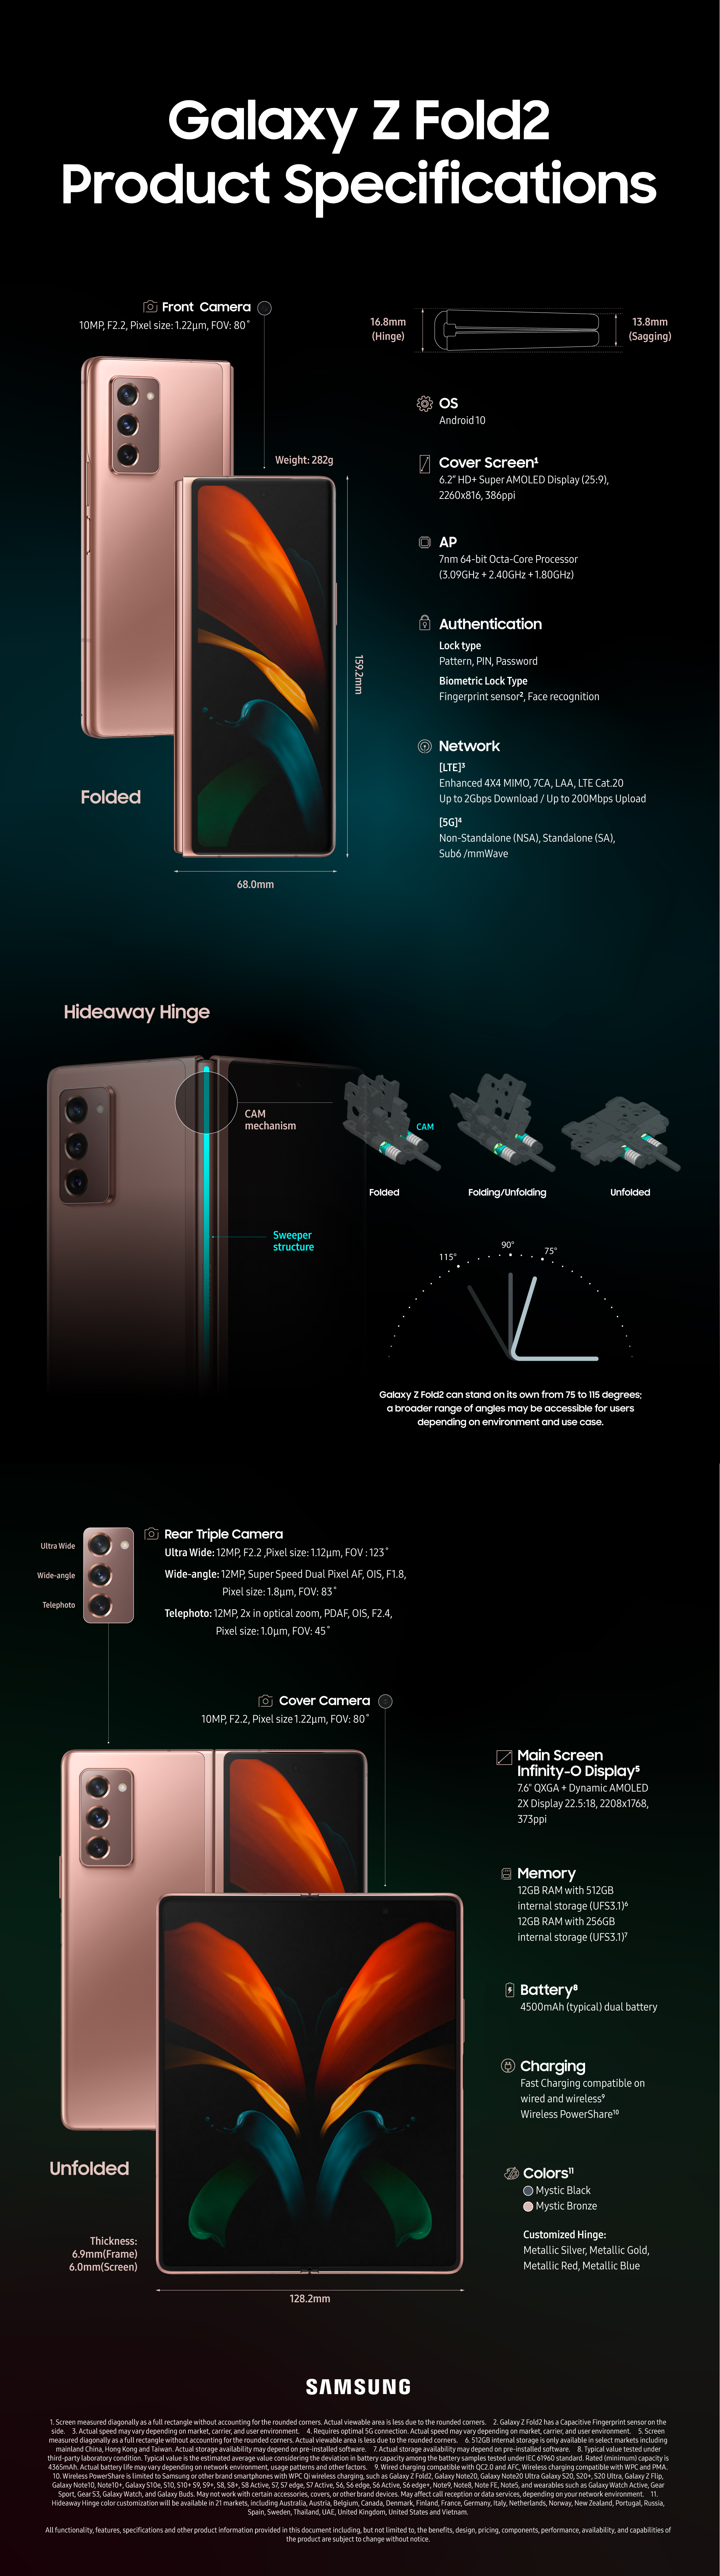 Galaxy Z Fold2 spec infographic